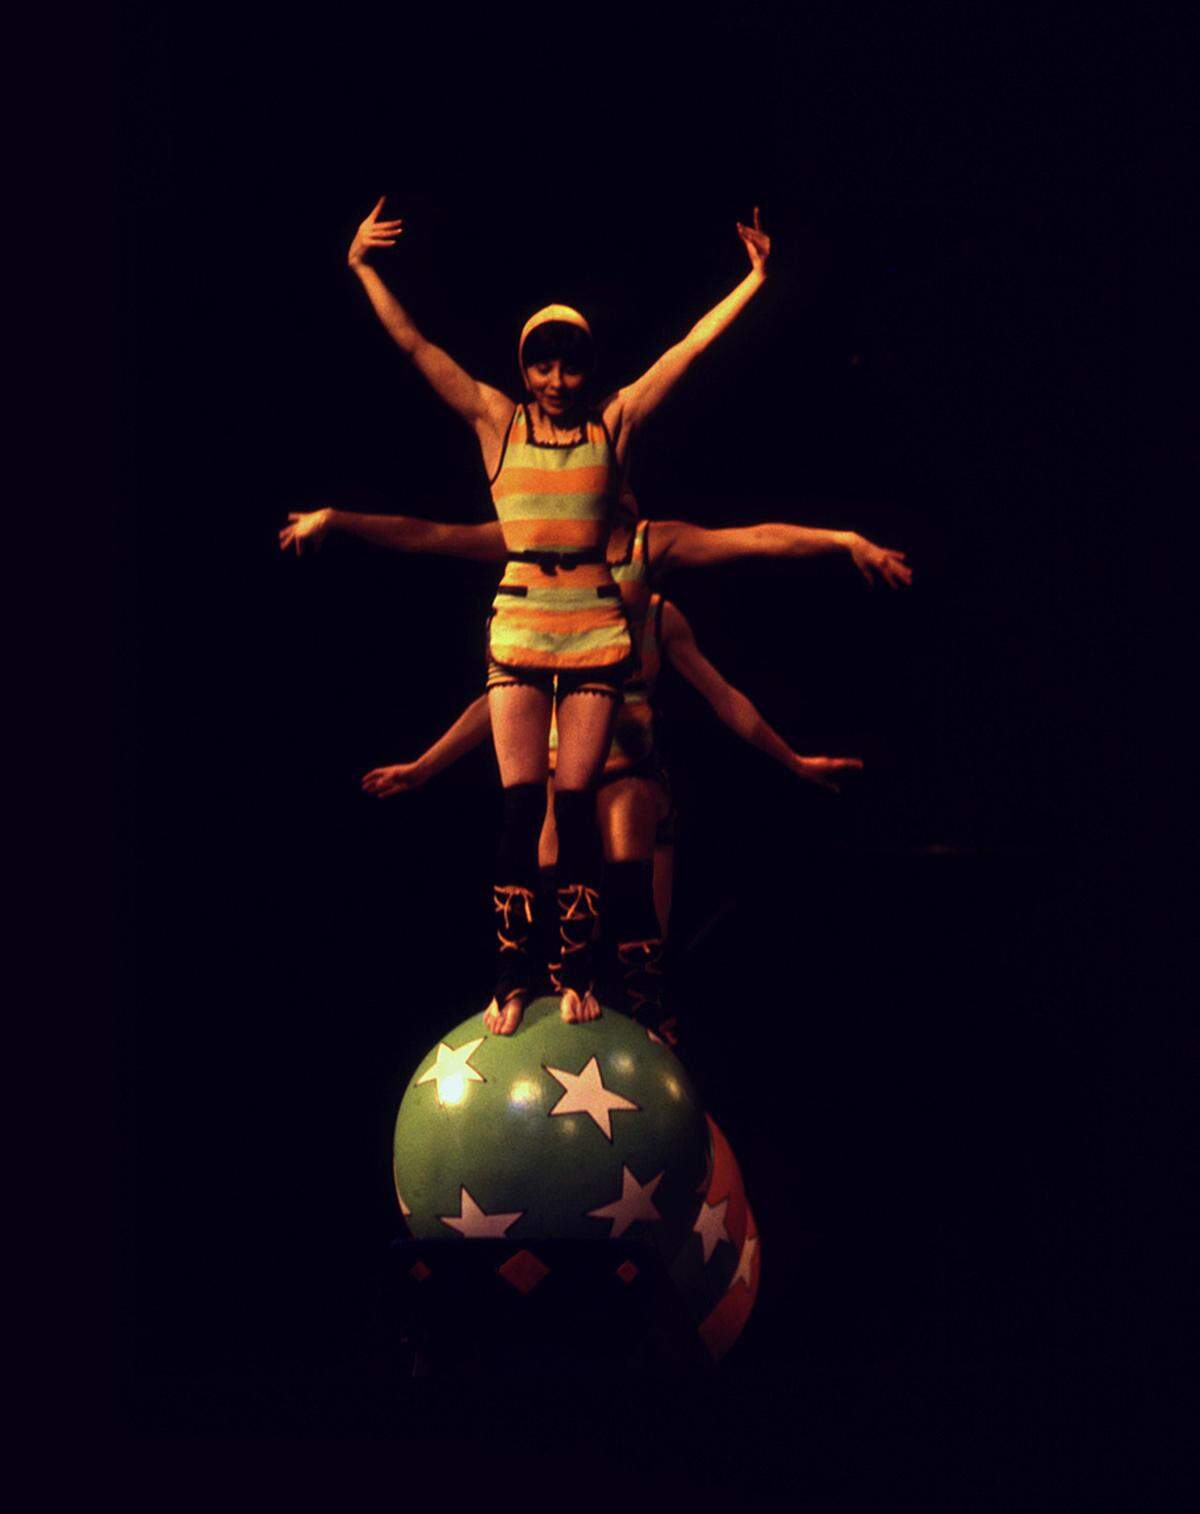 In seiner eindeutigen Formensprache ist der Zirkus "eine perfekte Vorlage für die künstlerische Auseinandersetzung" so Konrad.Rhona Bitner: "Untitled" aus der Serie "Circus", 2001 (1998) (c) Rhona Bitner, Privatsammlung, Courtesy BFAS Blondeau Fine Art Services, Genf